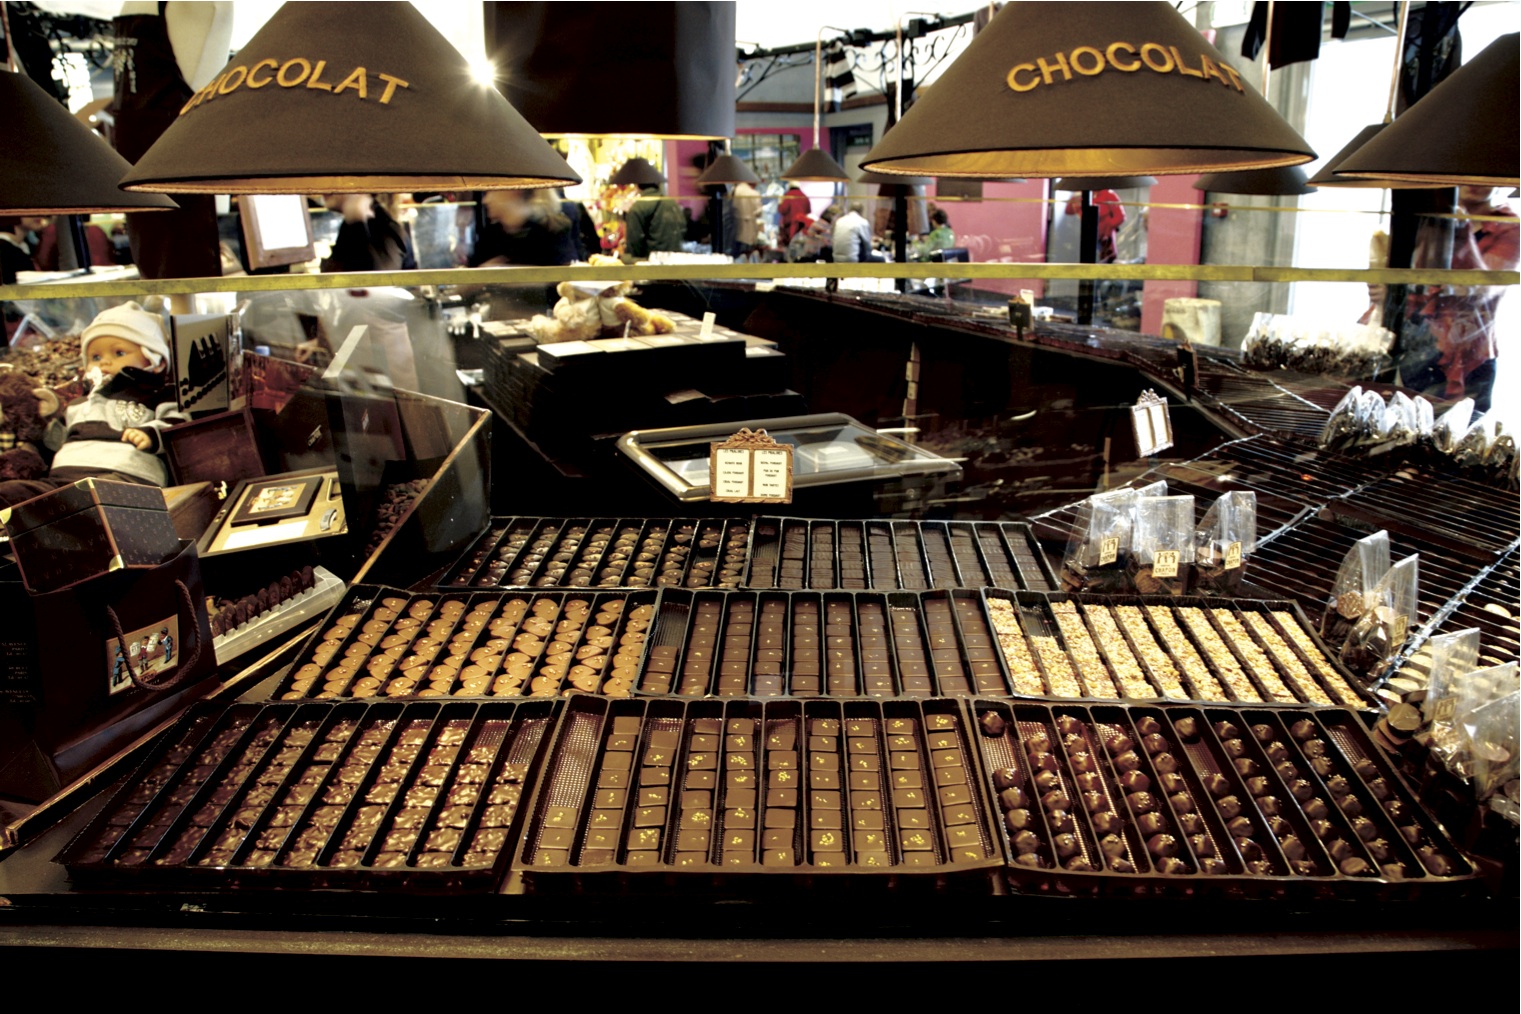 Résultat de recherche d'images pour "salon du chocolat bruxelles"